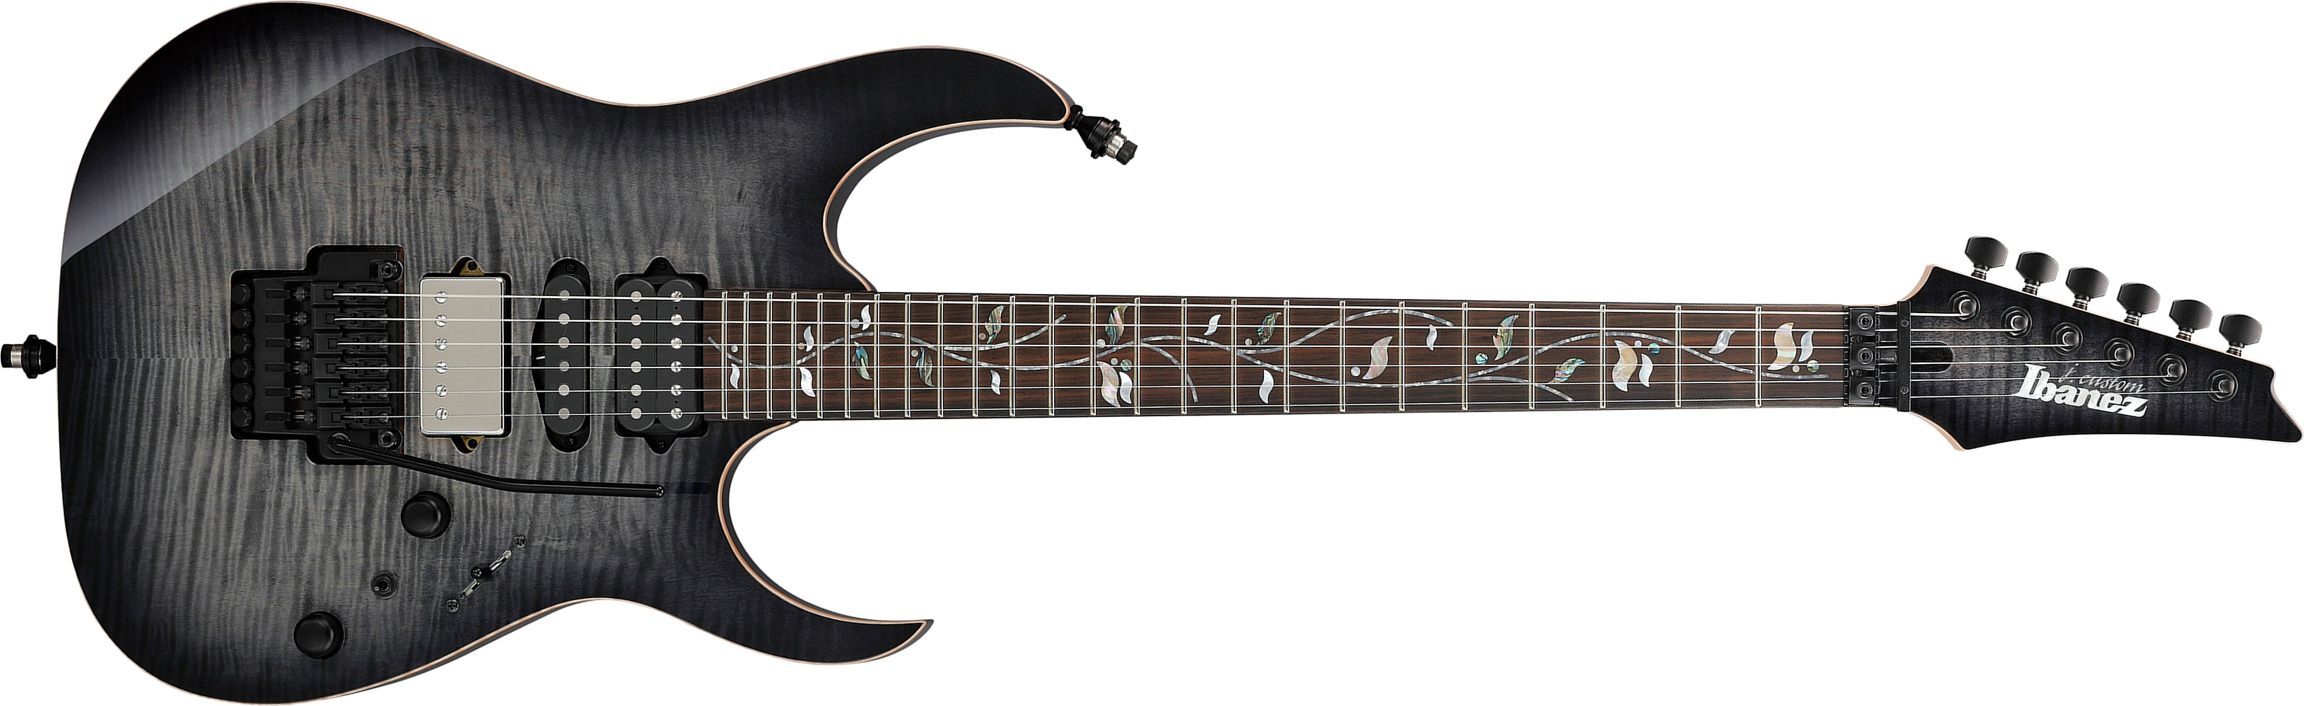 Ibanez Rg8870 Bre J.custom Jap Hsh Dimarzio Fr Eb - Black Rutile - Guitarra eléctrica con forma de str. - Main picture